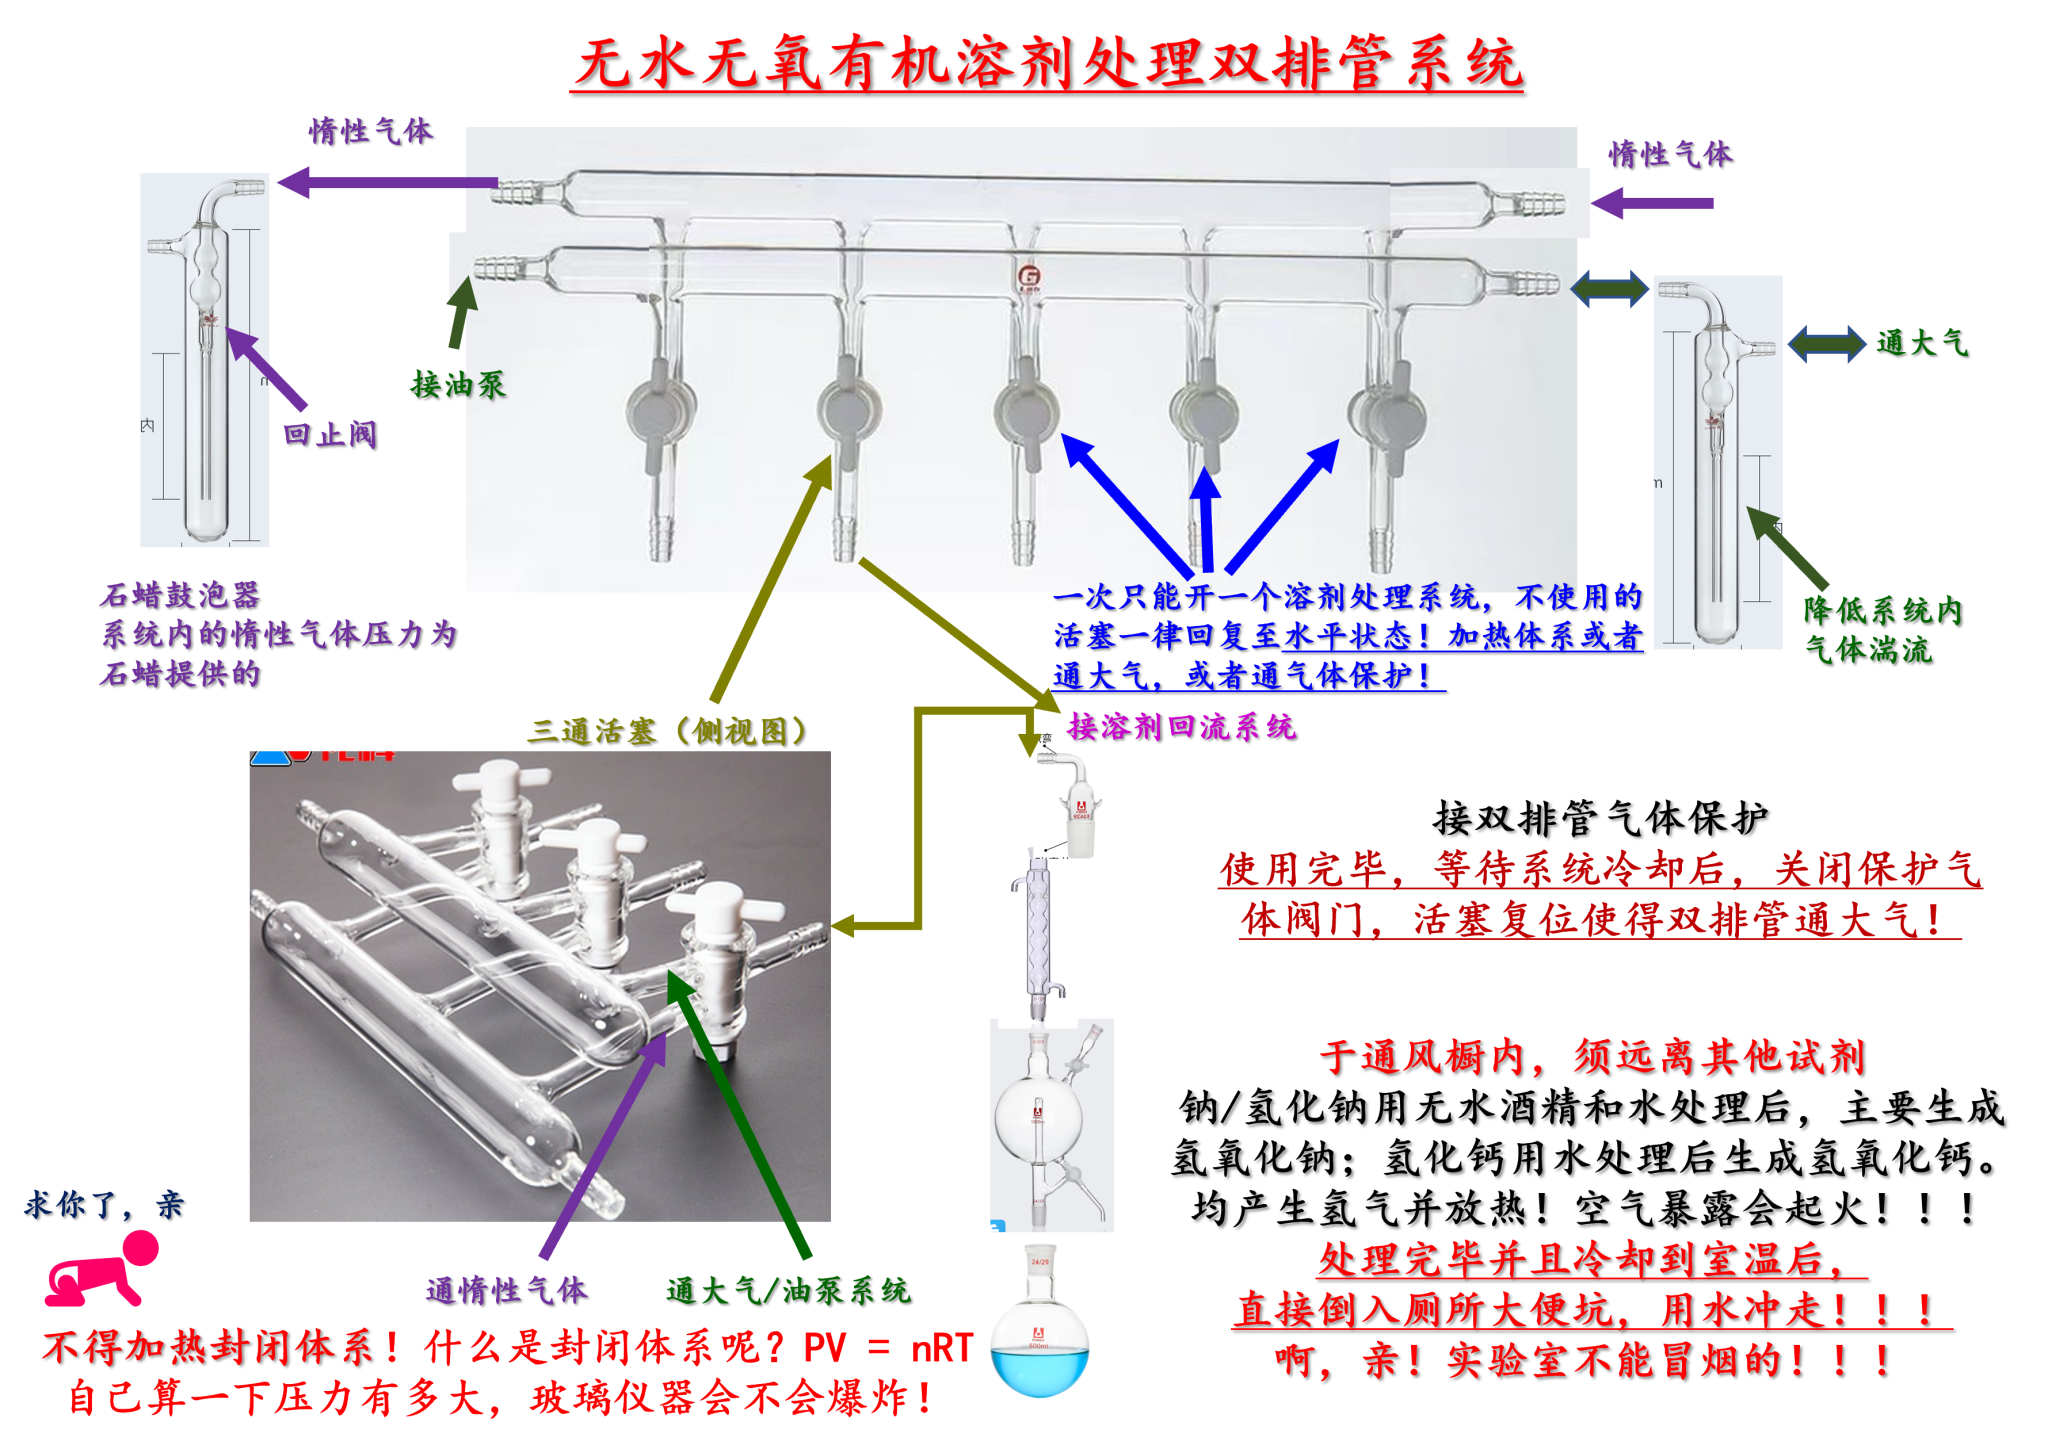 中海鑫铖-ZHXC-便携式高压软体氧舱-软体高压氧舱-家用微压氧舱-中海鑫铖（北京）国际救援装备有限公司